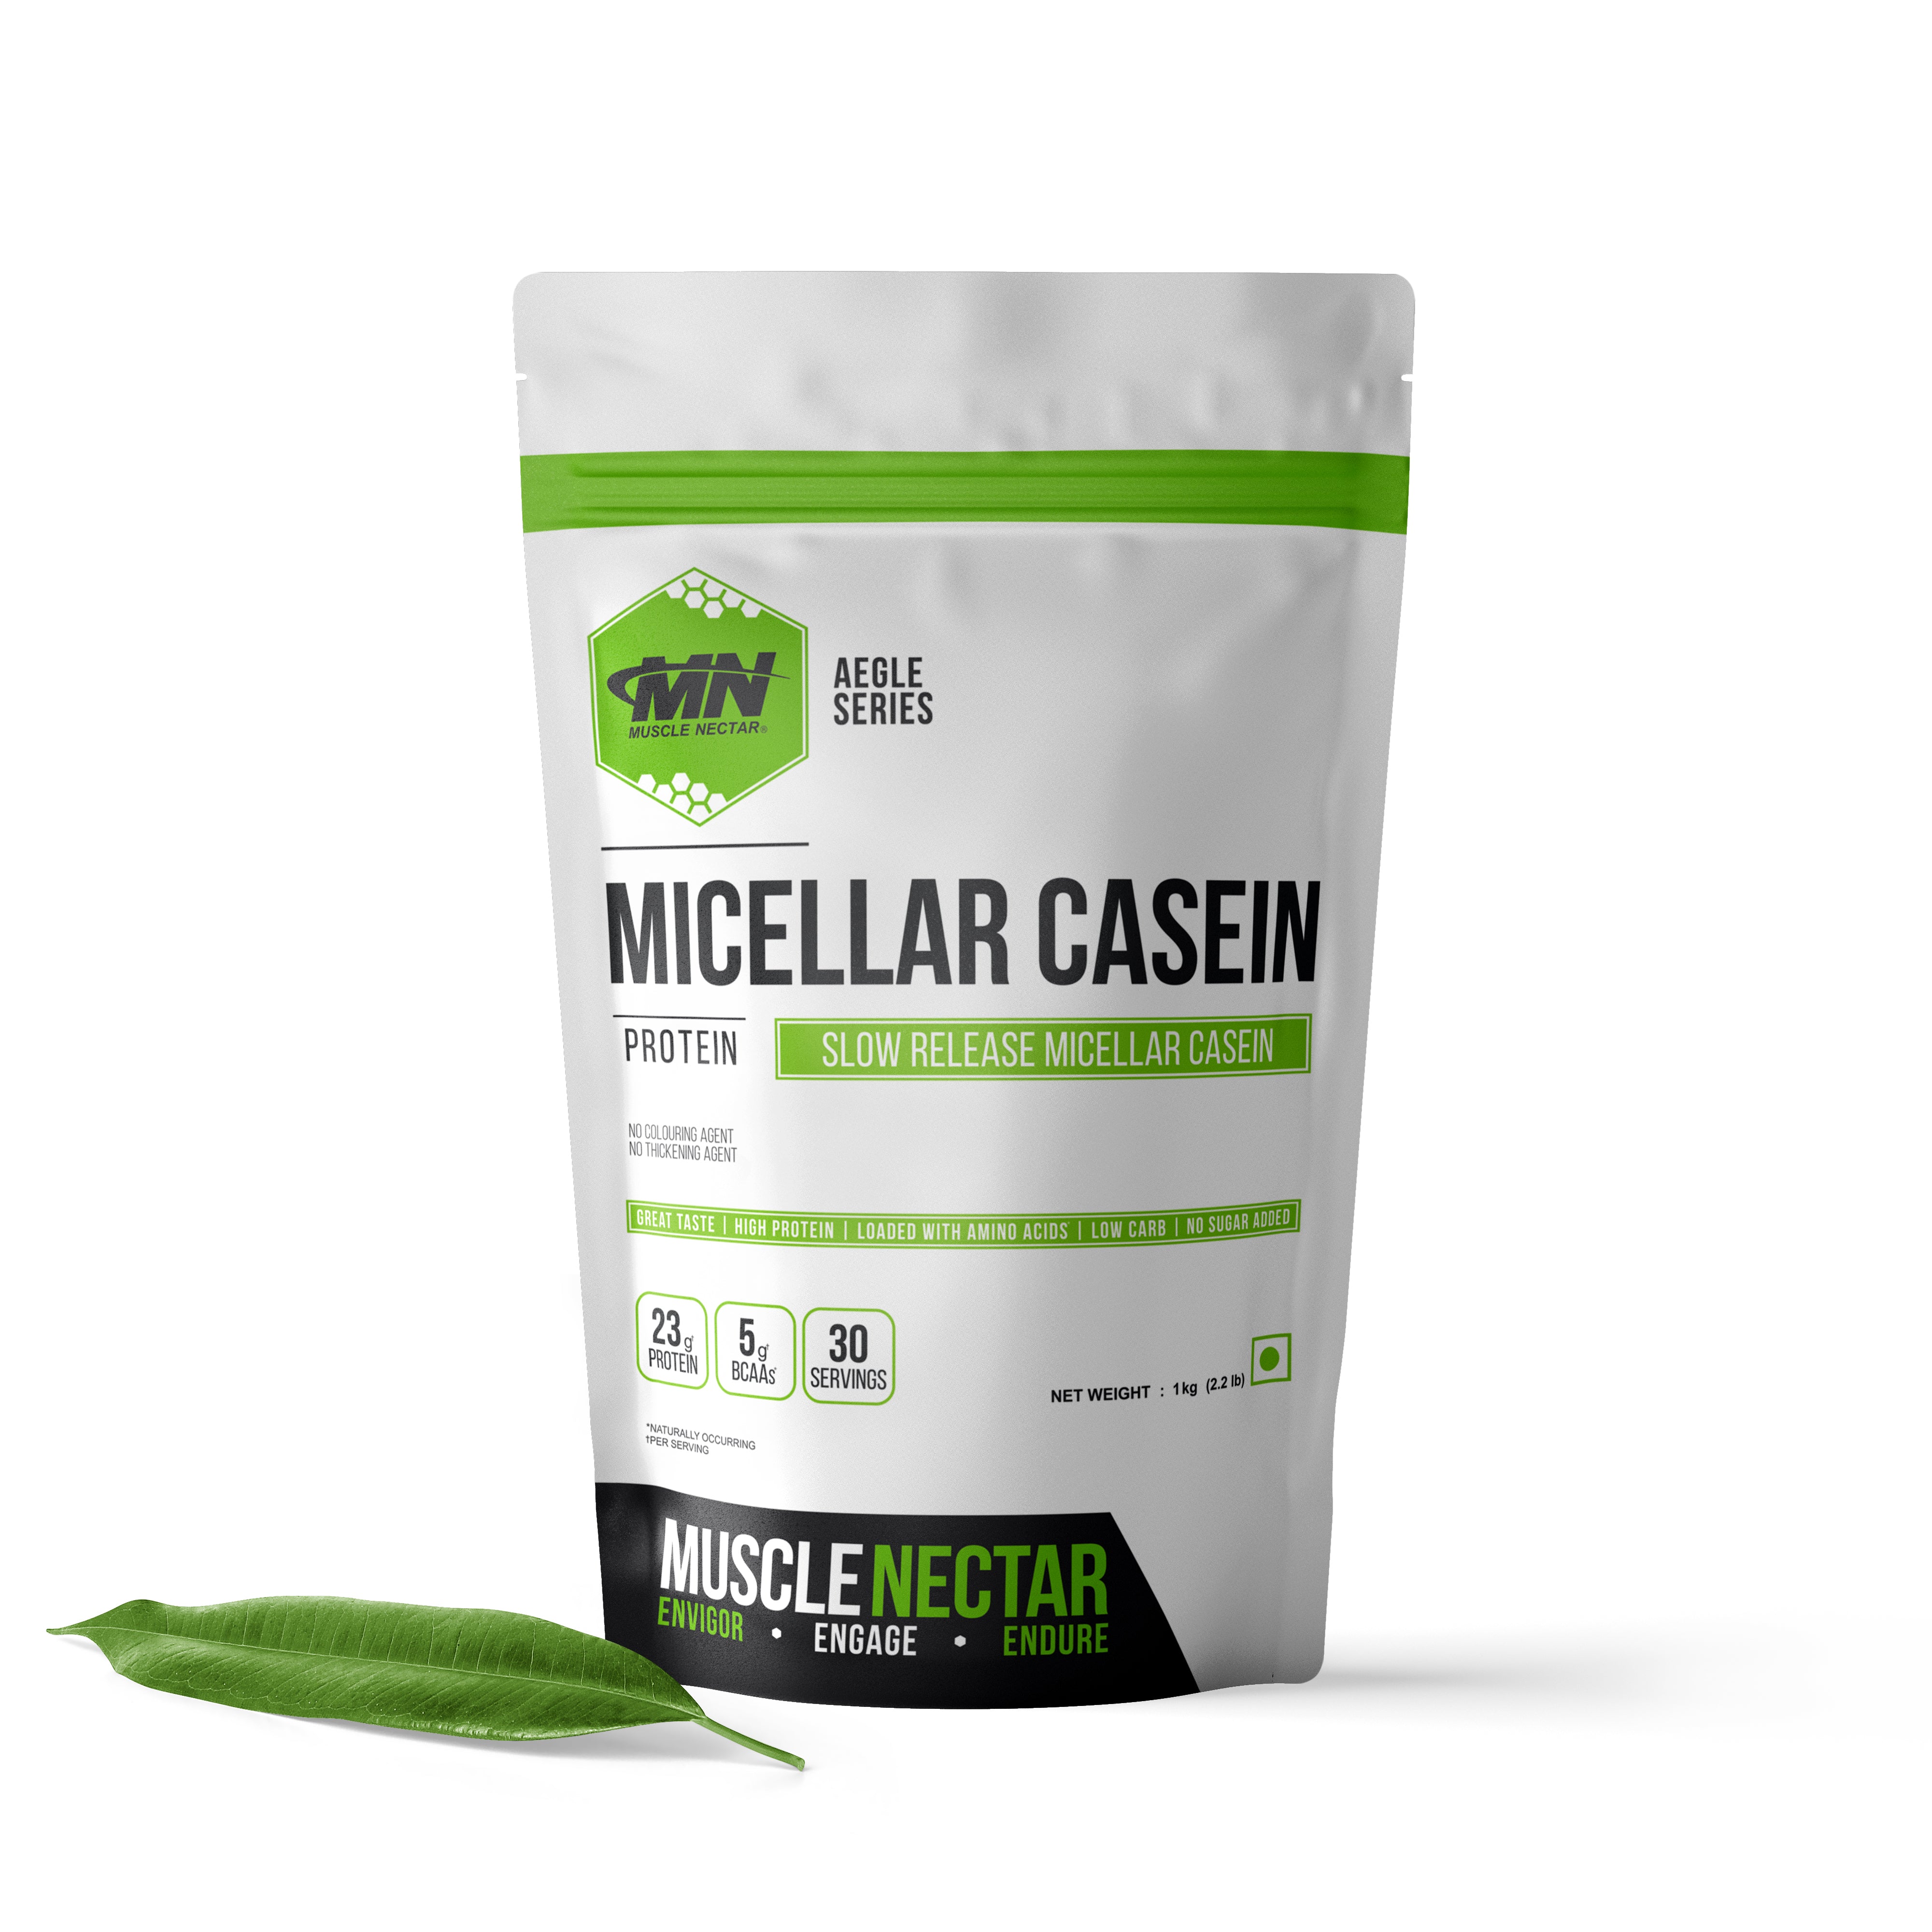 Micellar Casein (Slow Release Protein)